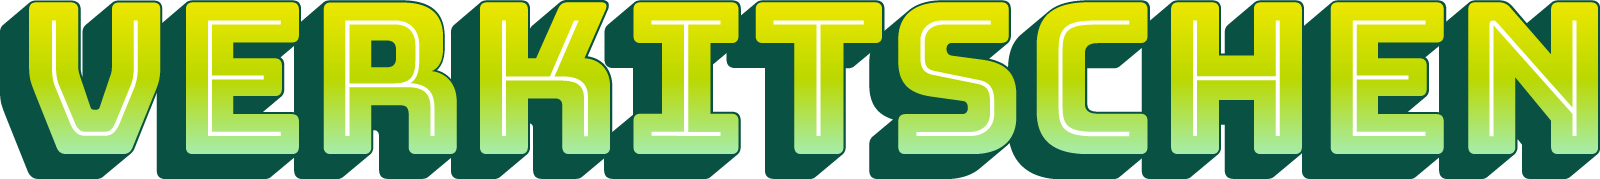 Verkitschen logo